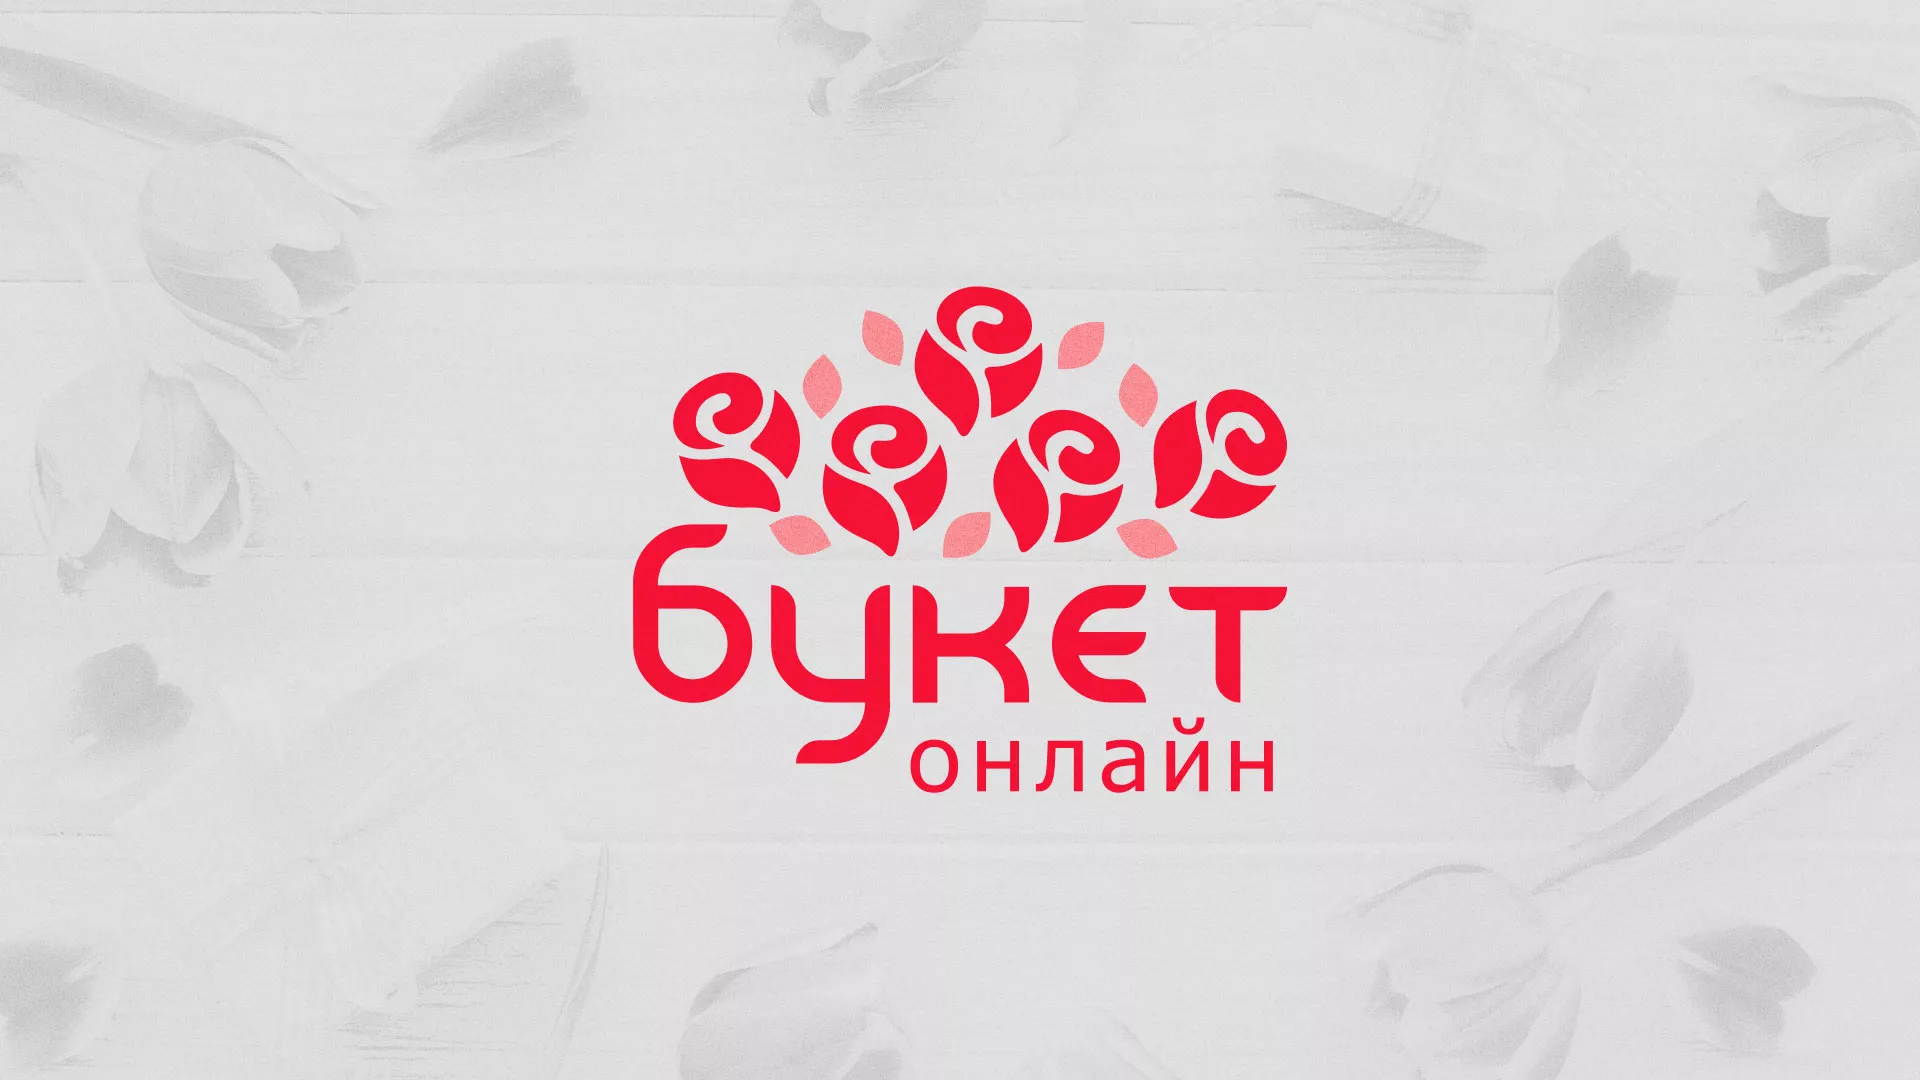 Создание интернет-магазина «Букет-онлайн» по цветам в Воскресенске